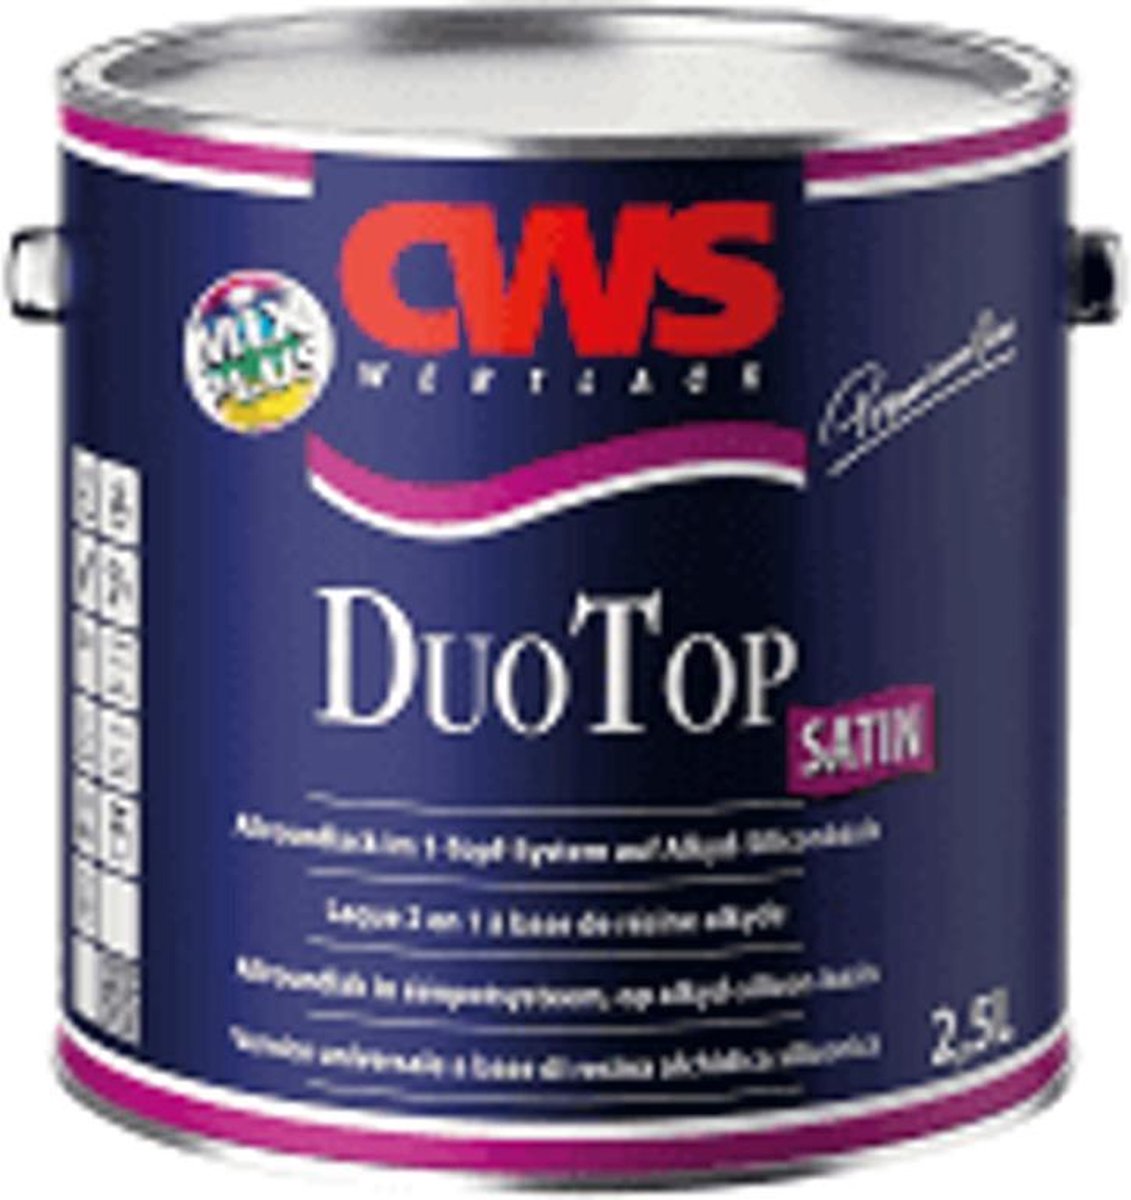 CWS DuoTop Aqua Satin - Lak - 1 Pot System - 0.75L, 2.5L